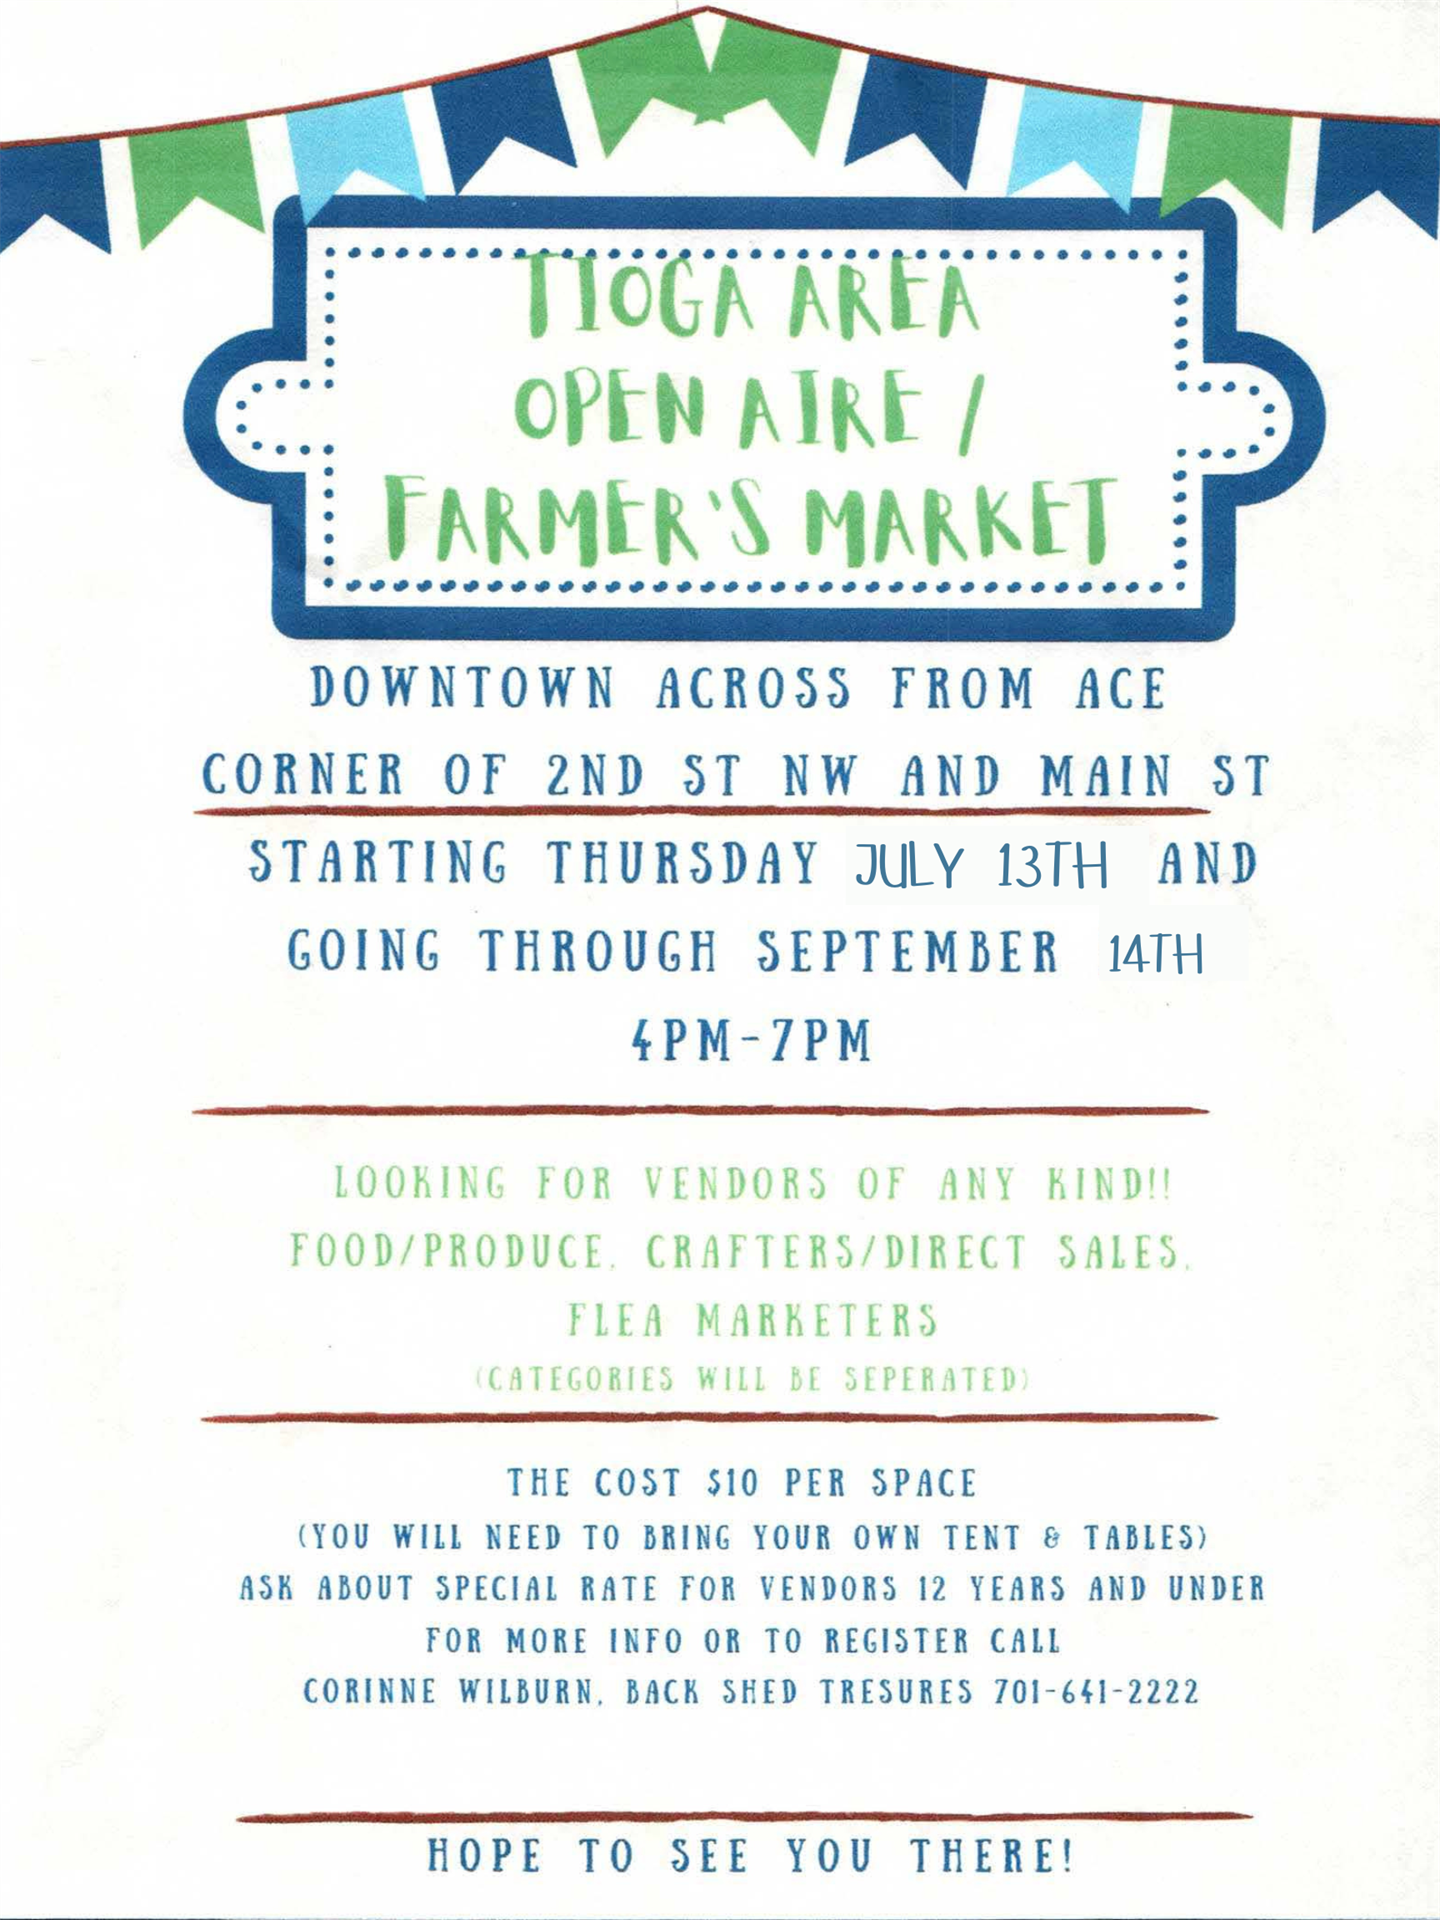 Tioga Area Open Aire Farmer's Market